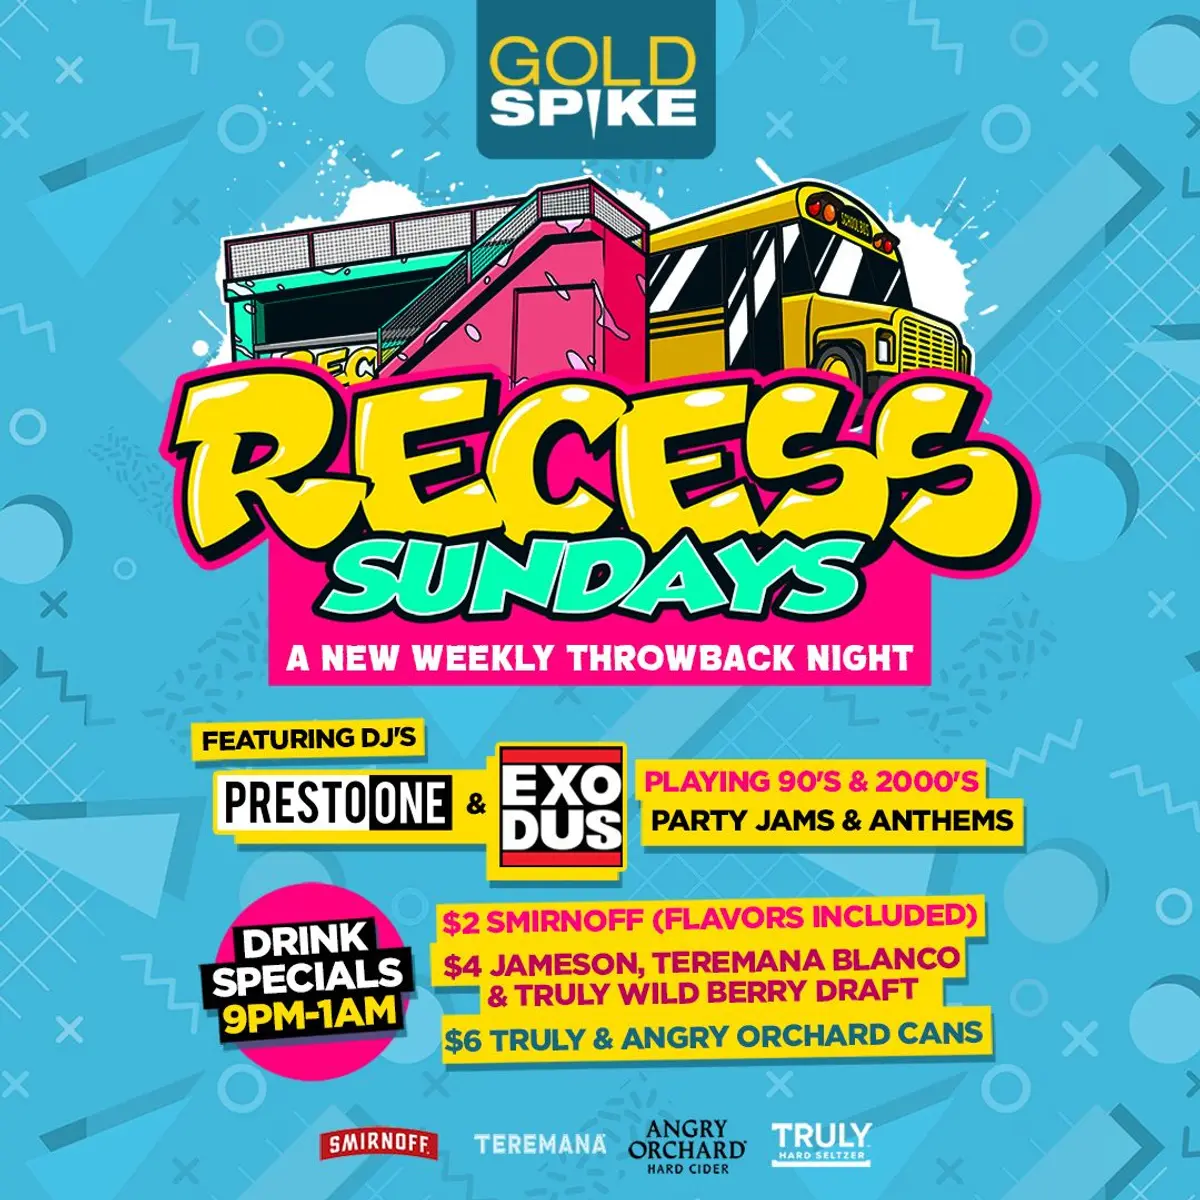 Recess Sundays